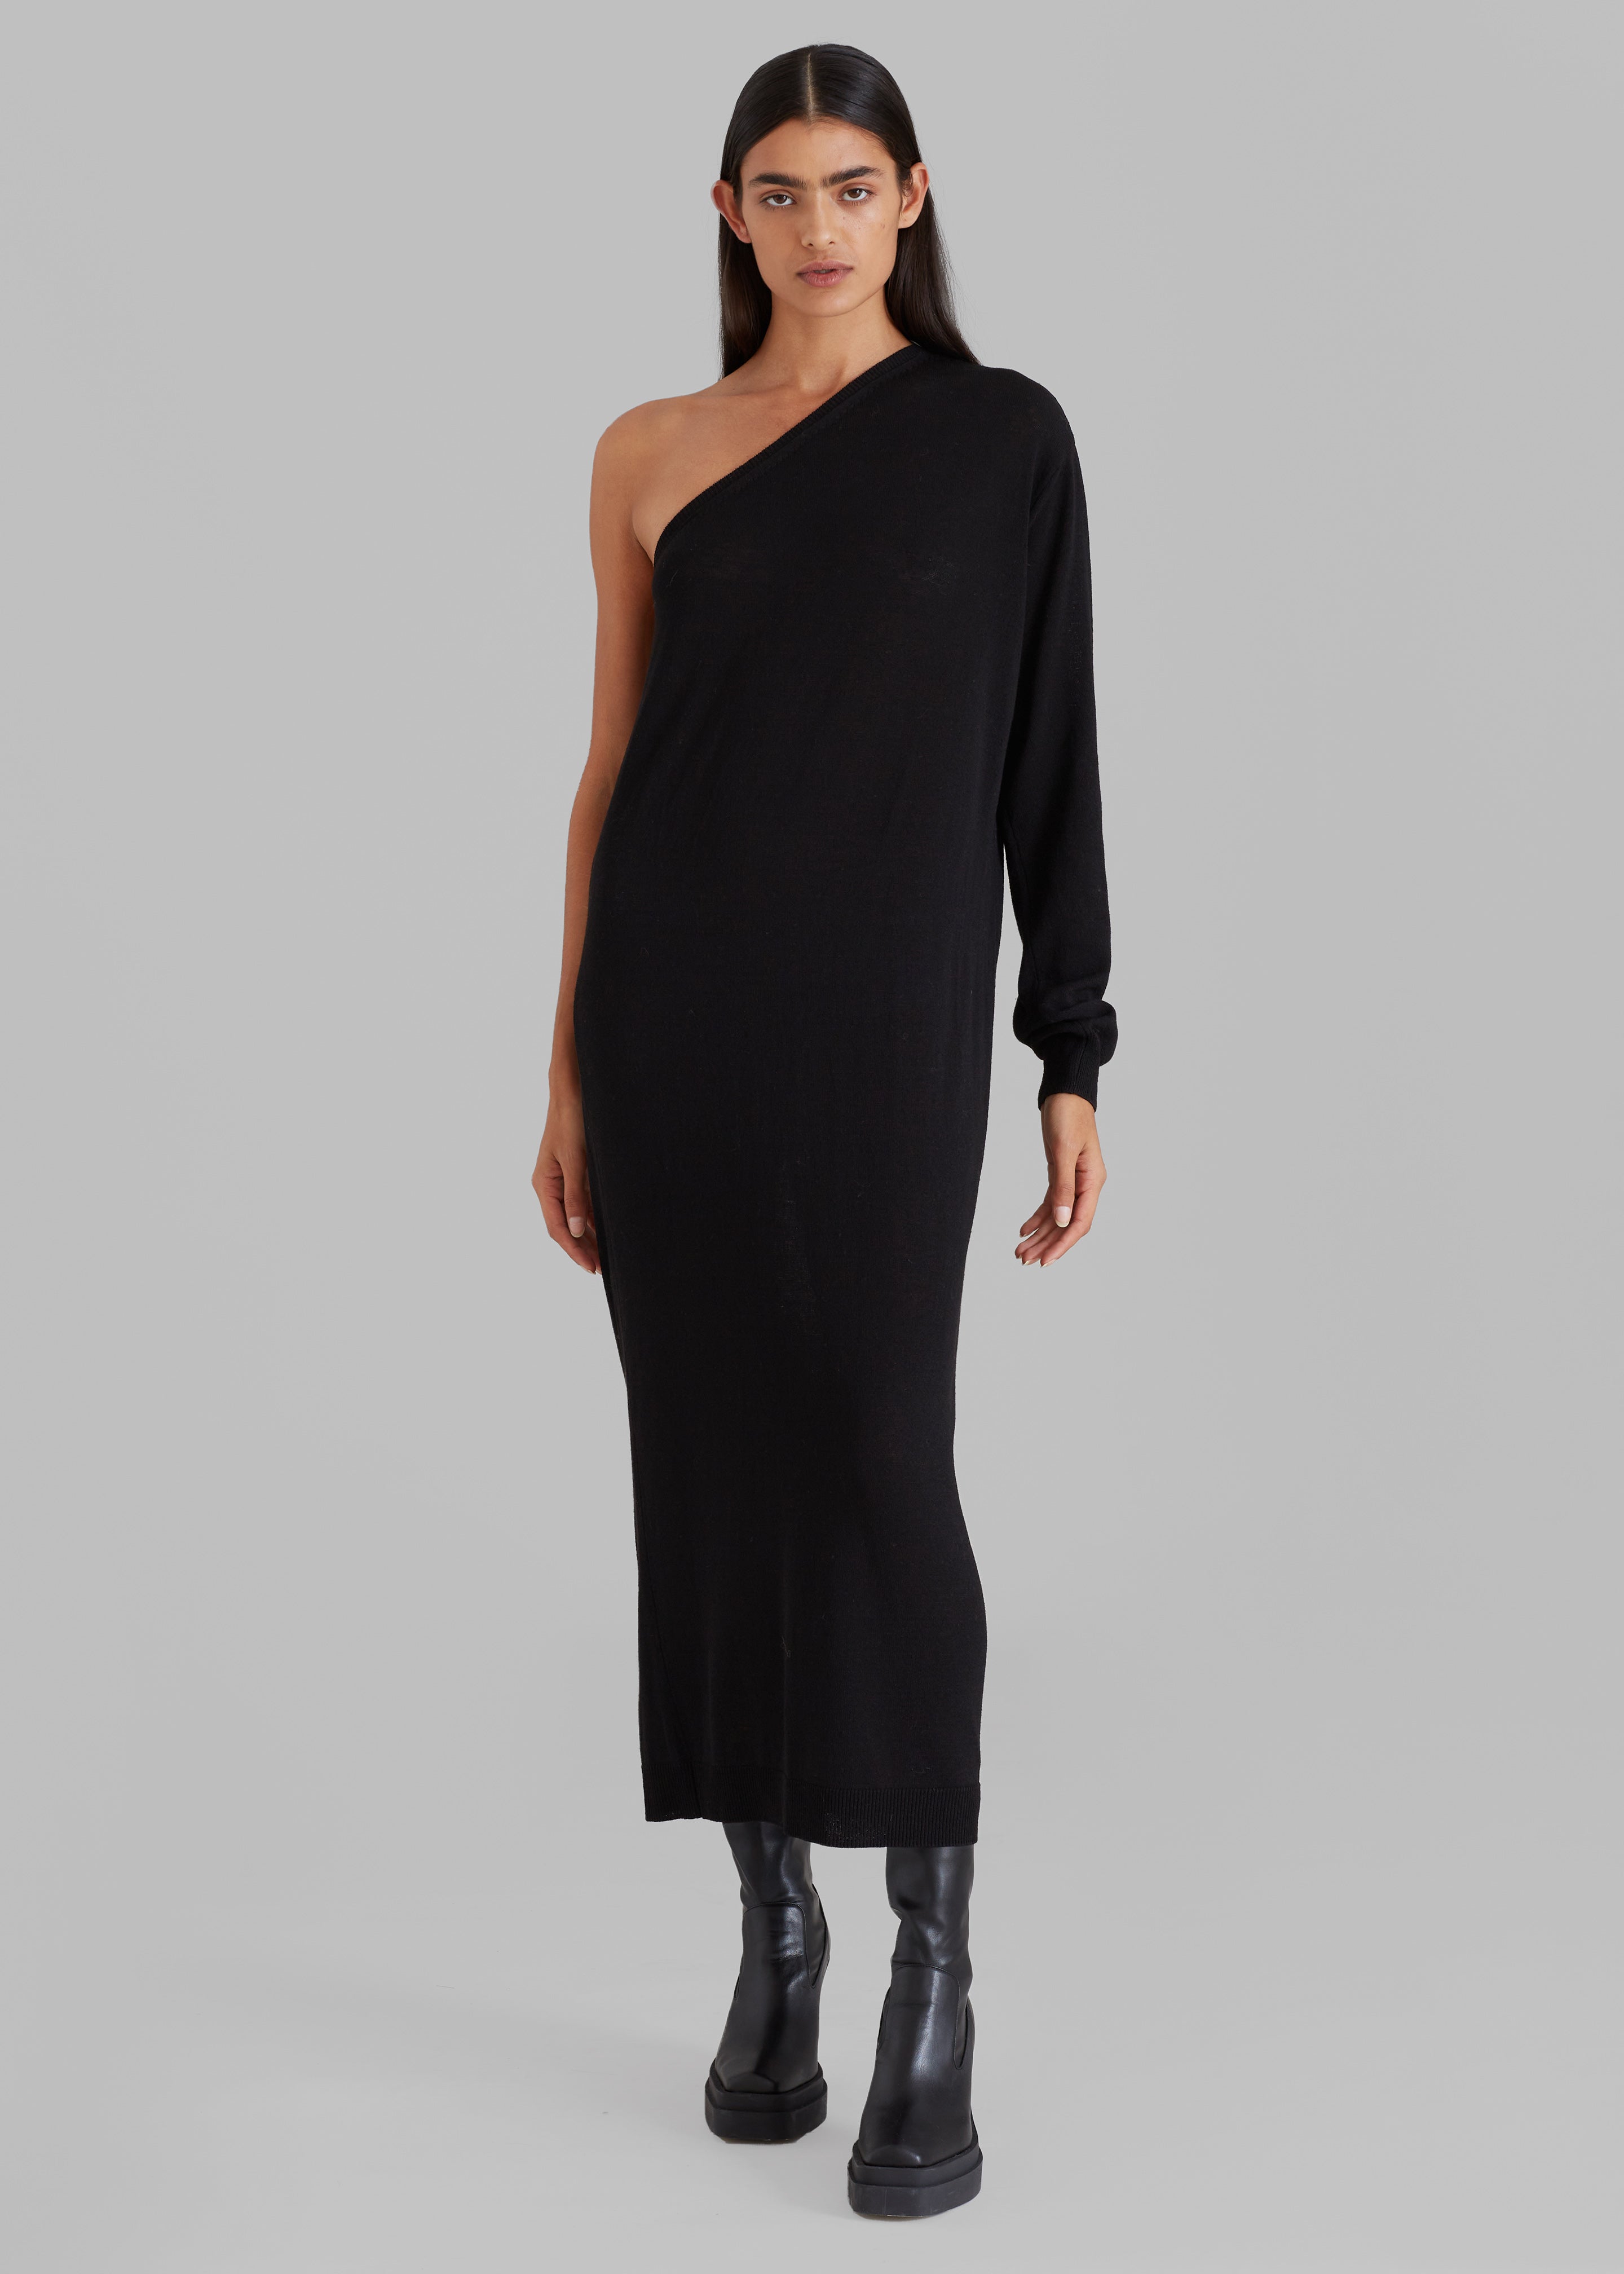 Lina One Shoulder Loose Knit Dress - Black - 3